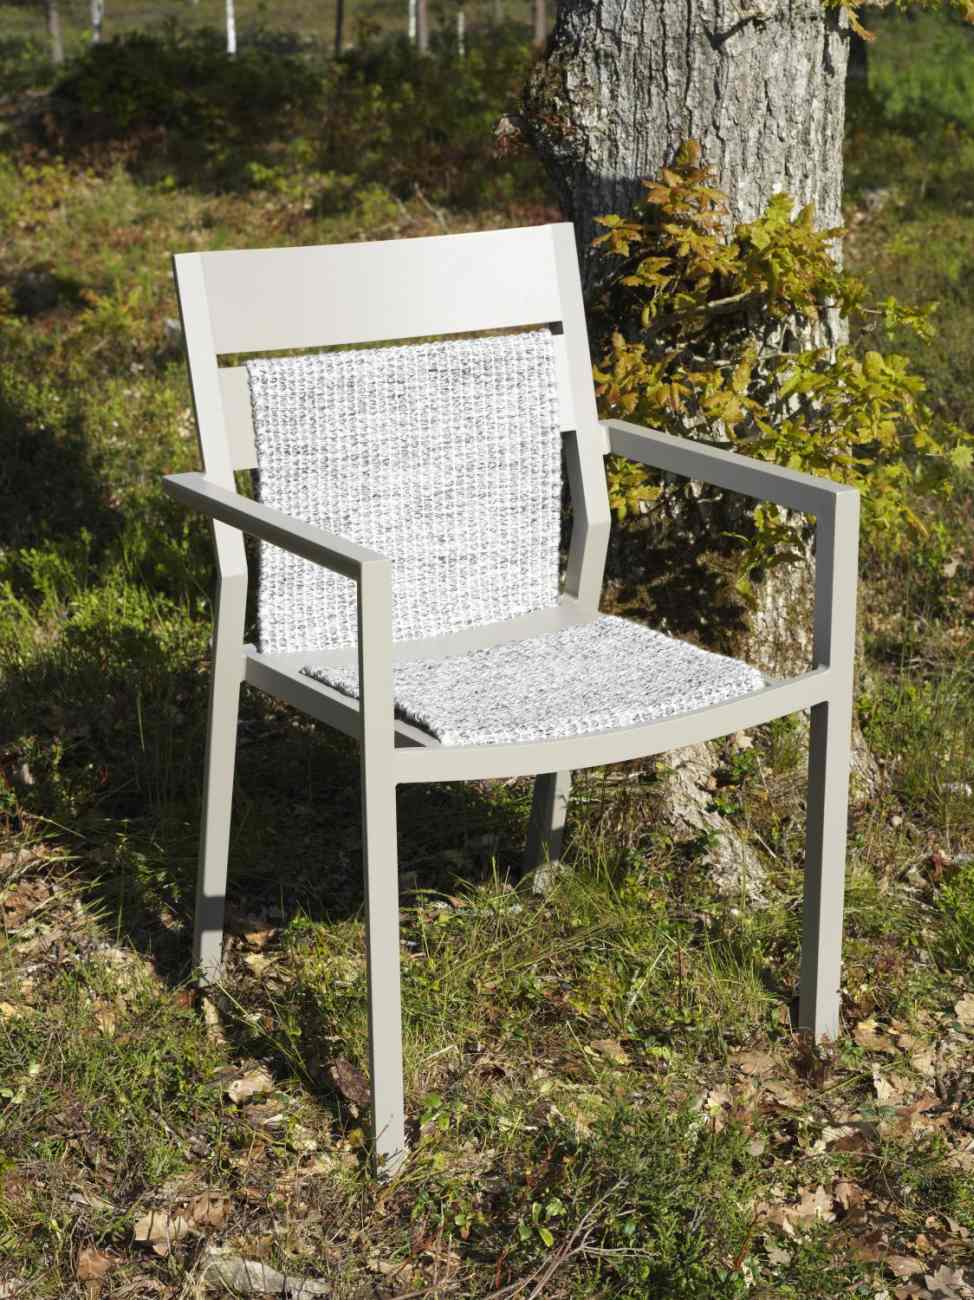 Der Gartenstuhl Delia überzeugt mit seinem modernen Design. Gefertigt wurde er aus Metall, welches einen kaki Farbton besitzt. Das Gestell ist auch aus Metall und hat eine kaki Farbe. Die Sitzhöhe des Stuhls beträgt 43 cm.